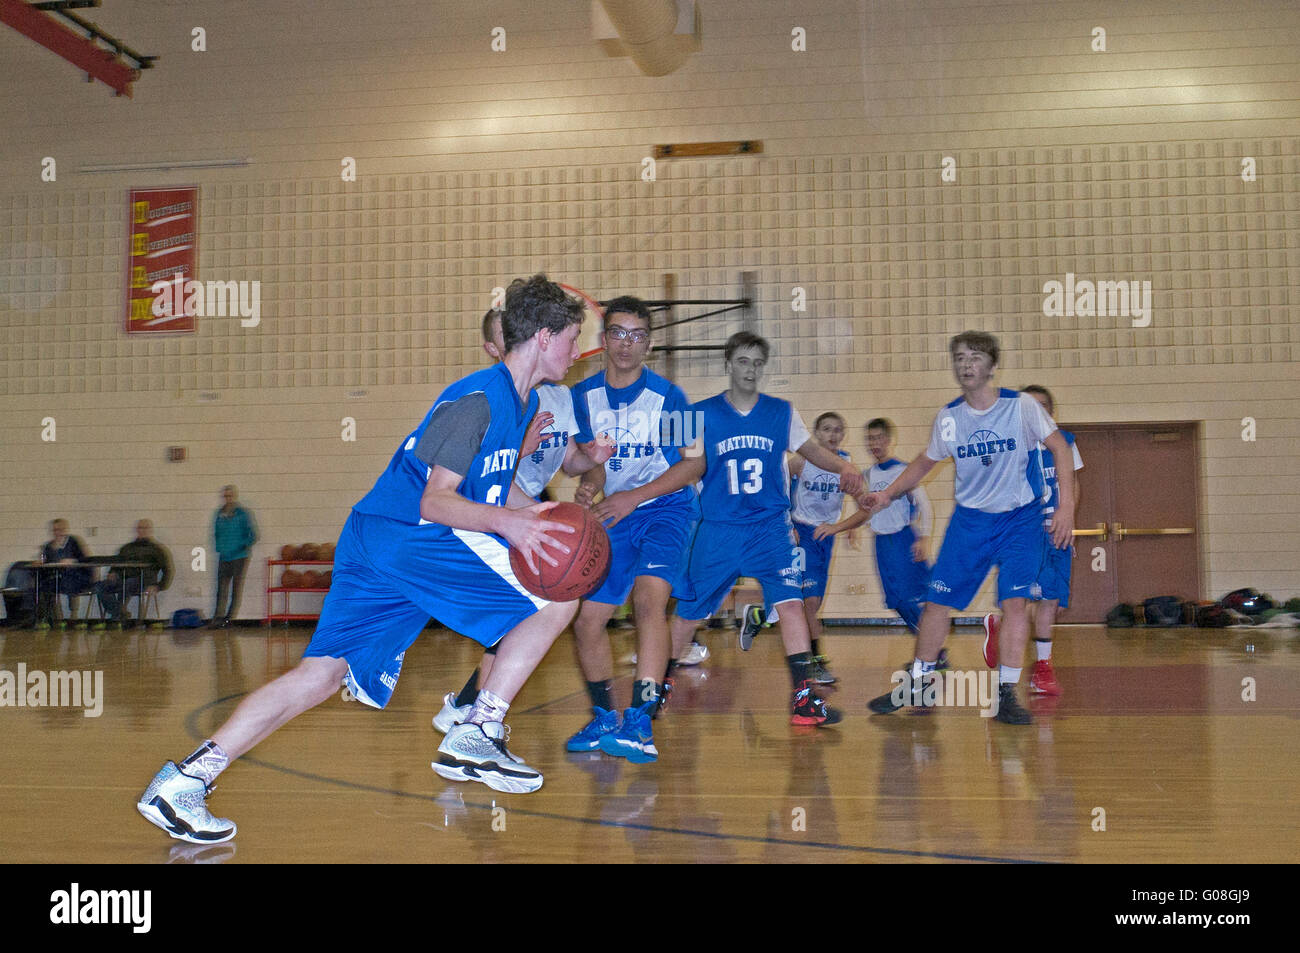 Giovane ragazzo adolescente età 13 dribbling basket per Natività Scuola cattolica durante una conferenza gioco. St Paul Minnesota MN USA Foto Stock